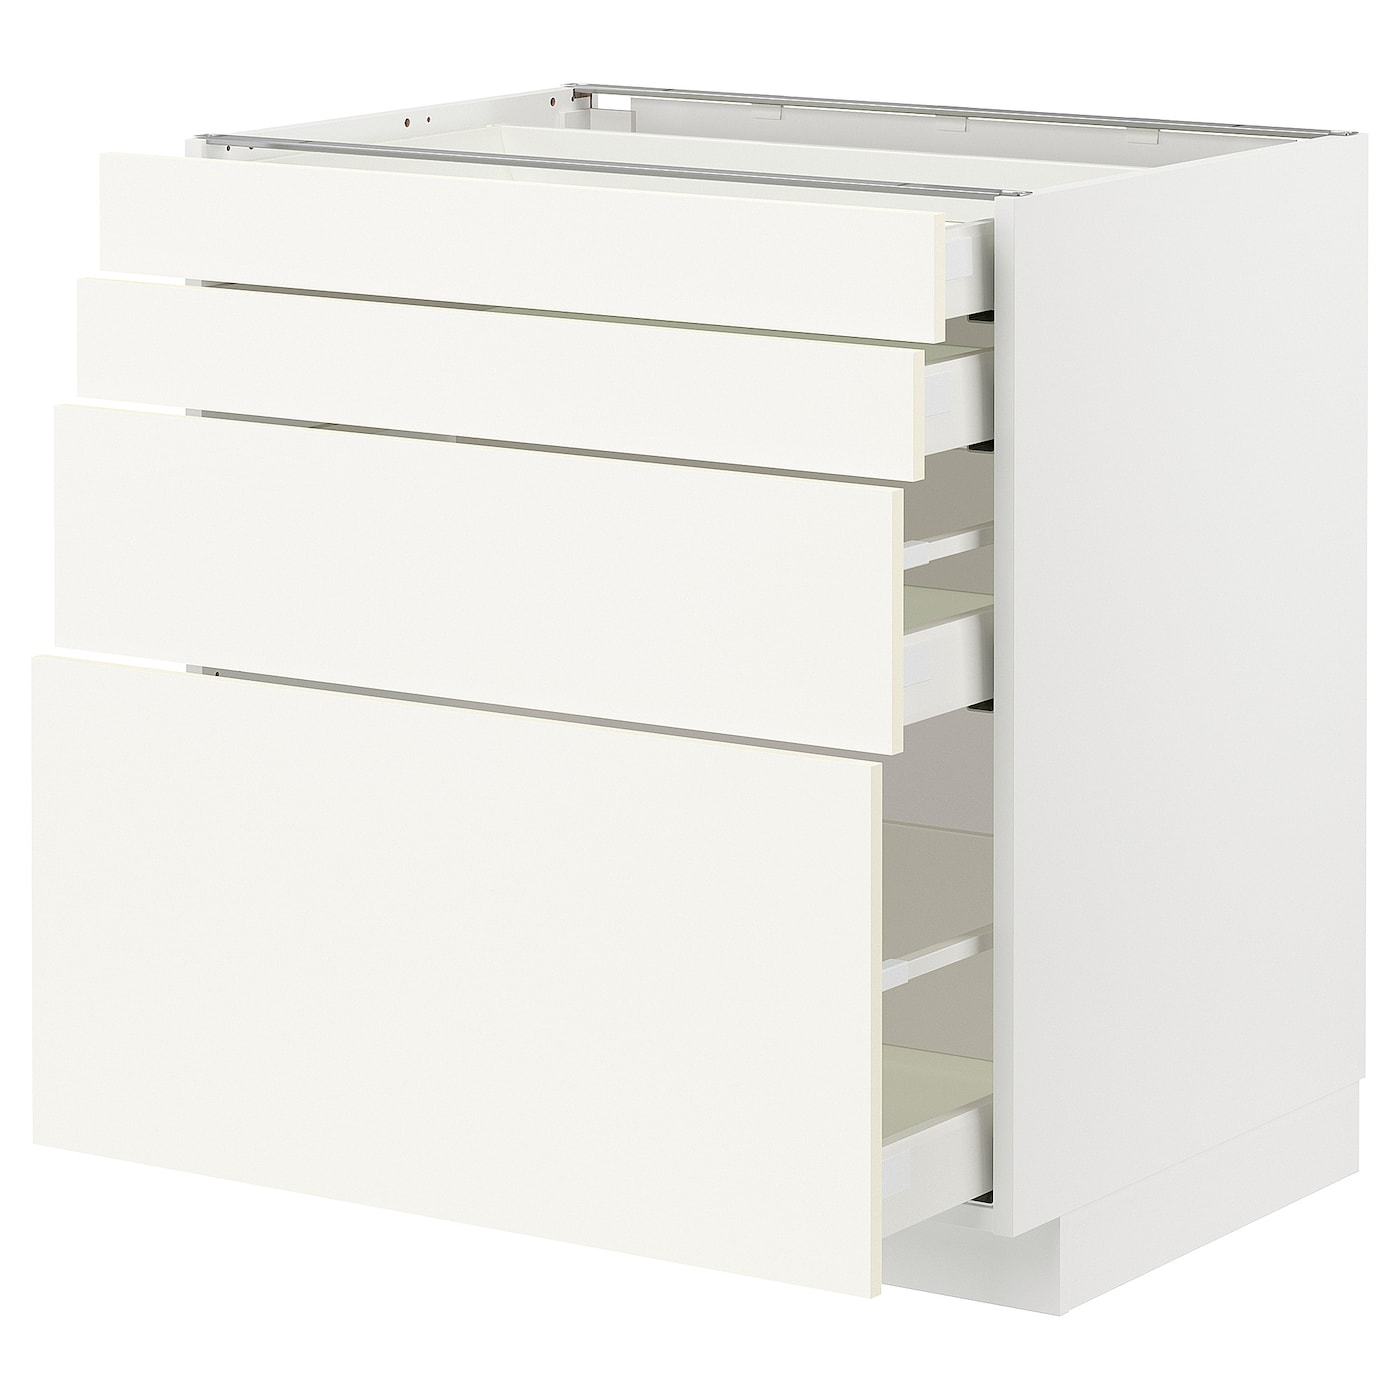 Напольный шкаф  - IKEA METOD MAXIMERA, 88x61,6x80см, белый, МЕТОД МАКСИМЕРА ИКЕА